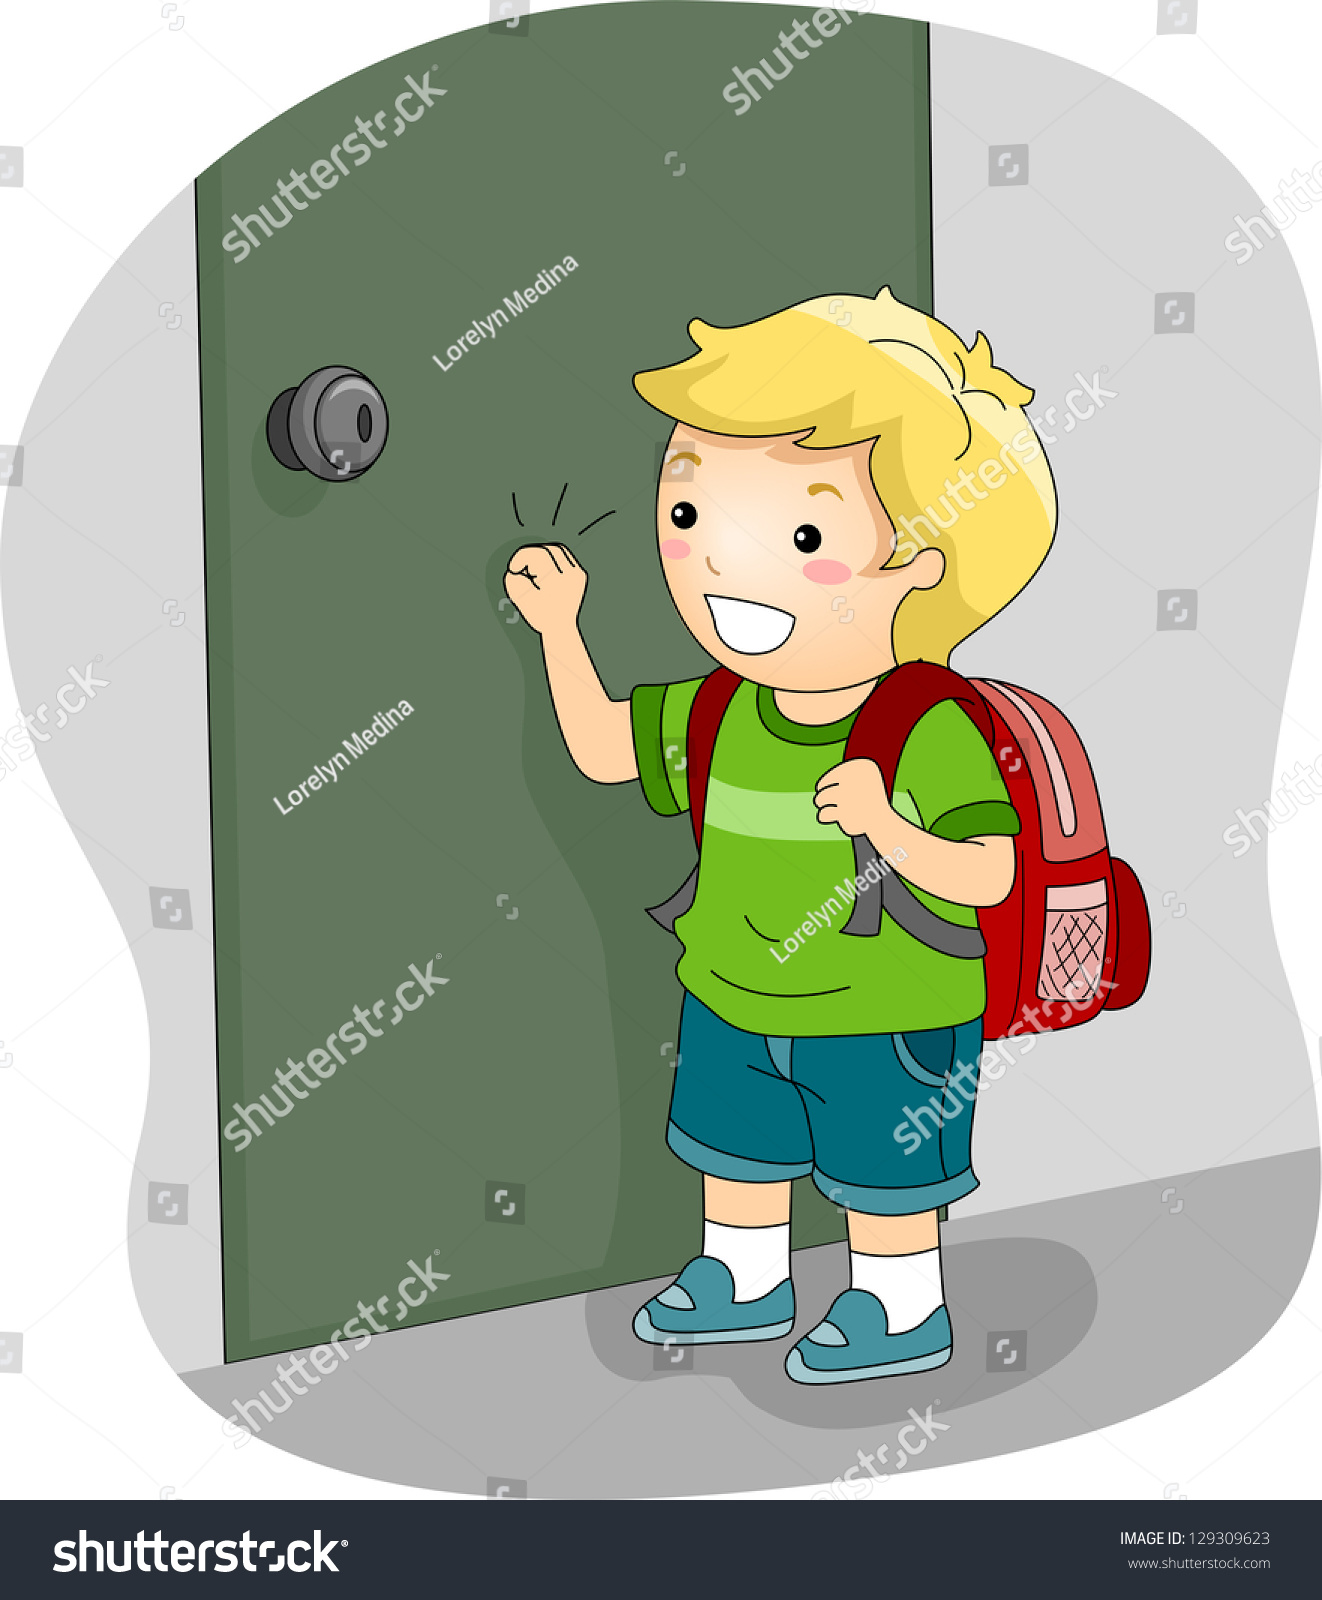 Включи мальчик пришел в школу. Иллюстрация постучитесь в дверь. Мальчик стучит в дверь иллюстрация. Ломится в дверь мультяшный. Постучи в дверь ребенок.